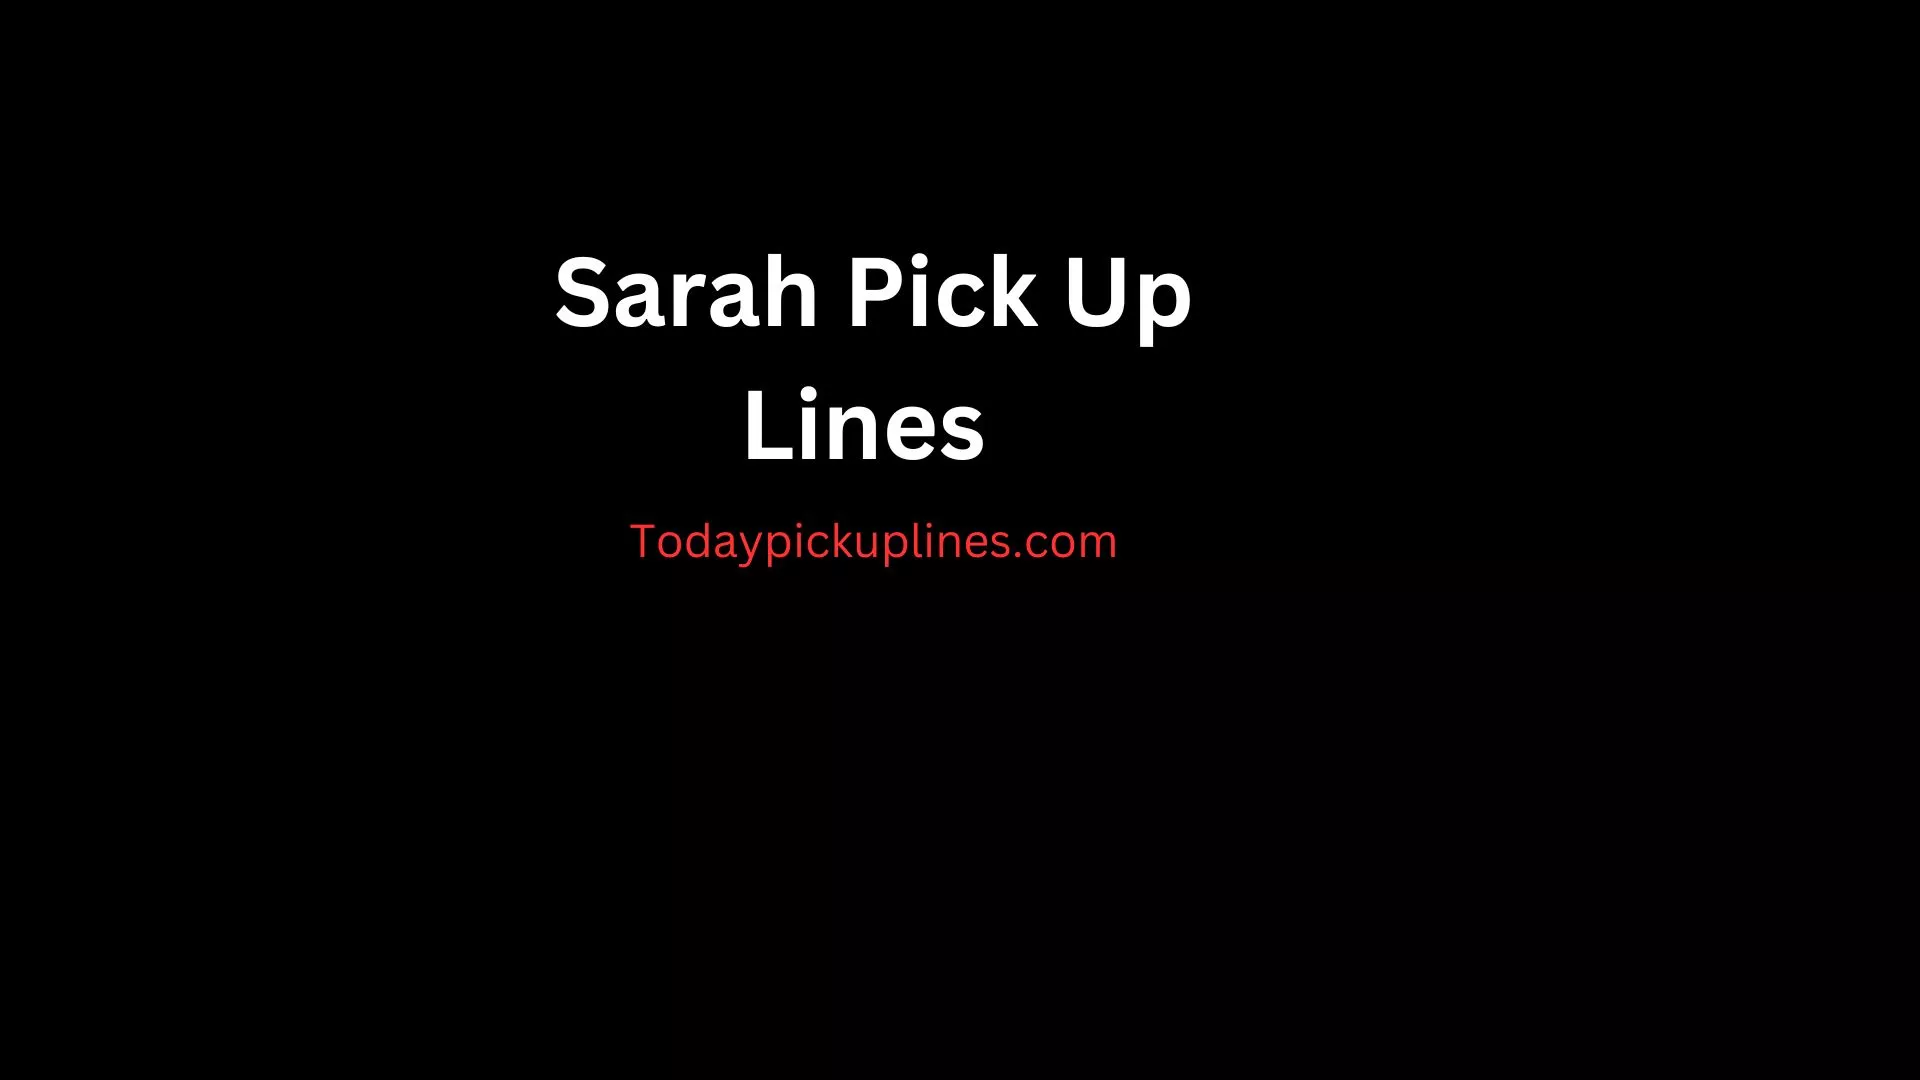 Sarah Pick Up Lines